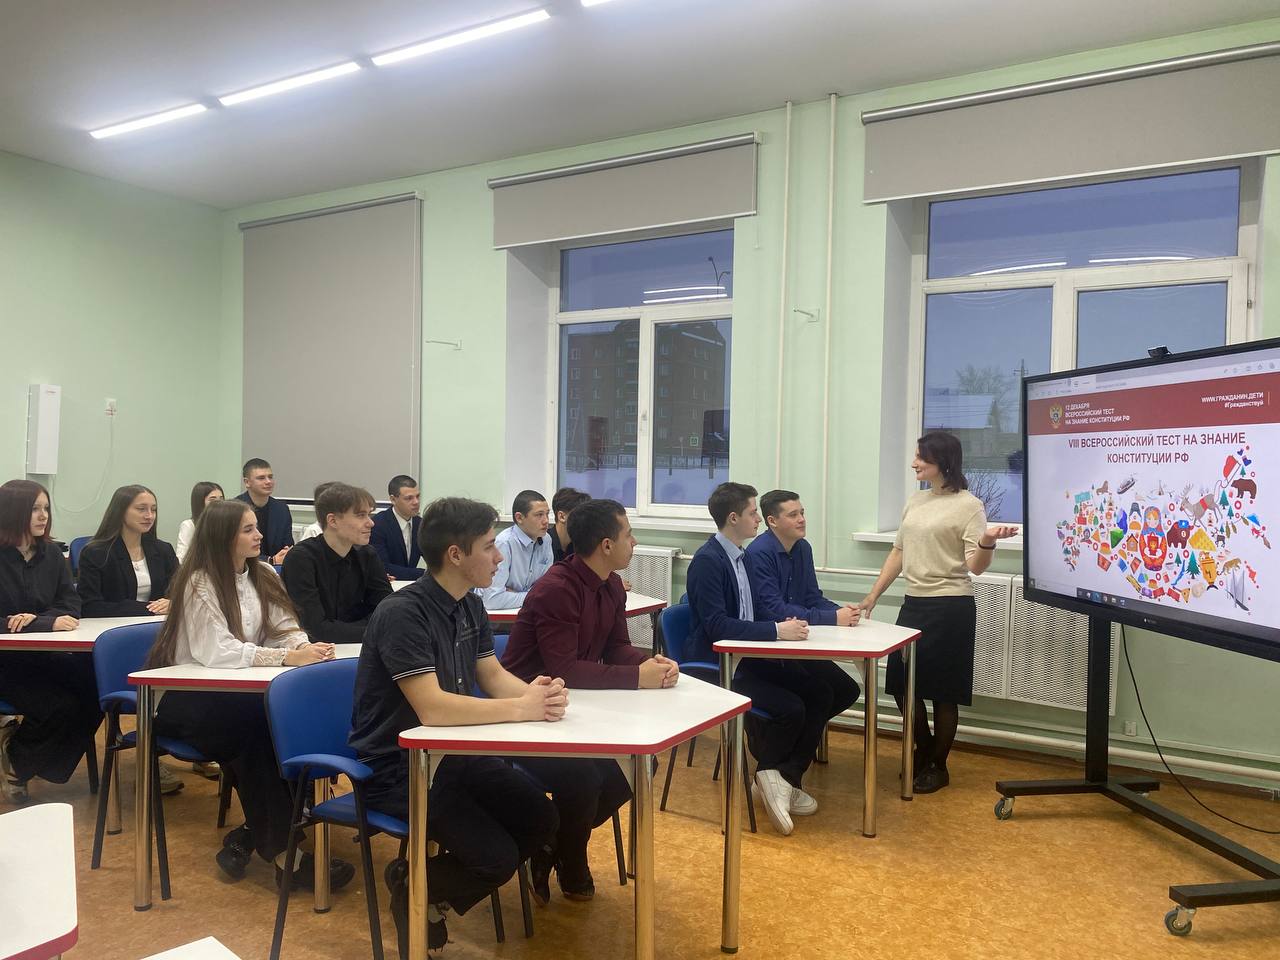 Кузбасские школьники готовятся к VIII Всероссийскому тесту на знание Конституции РФ